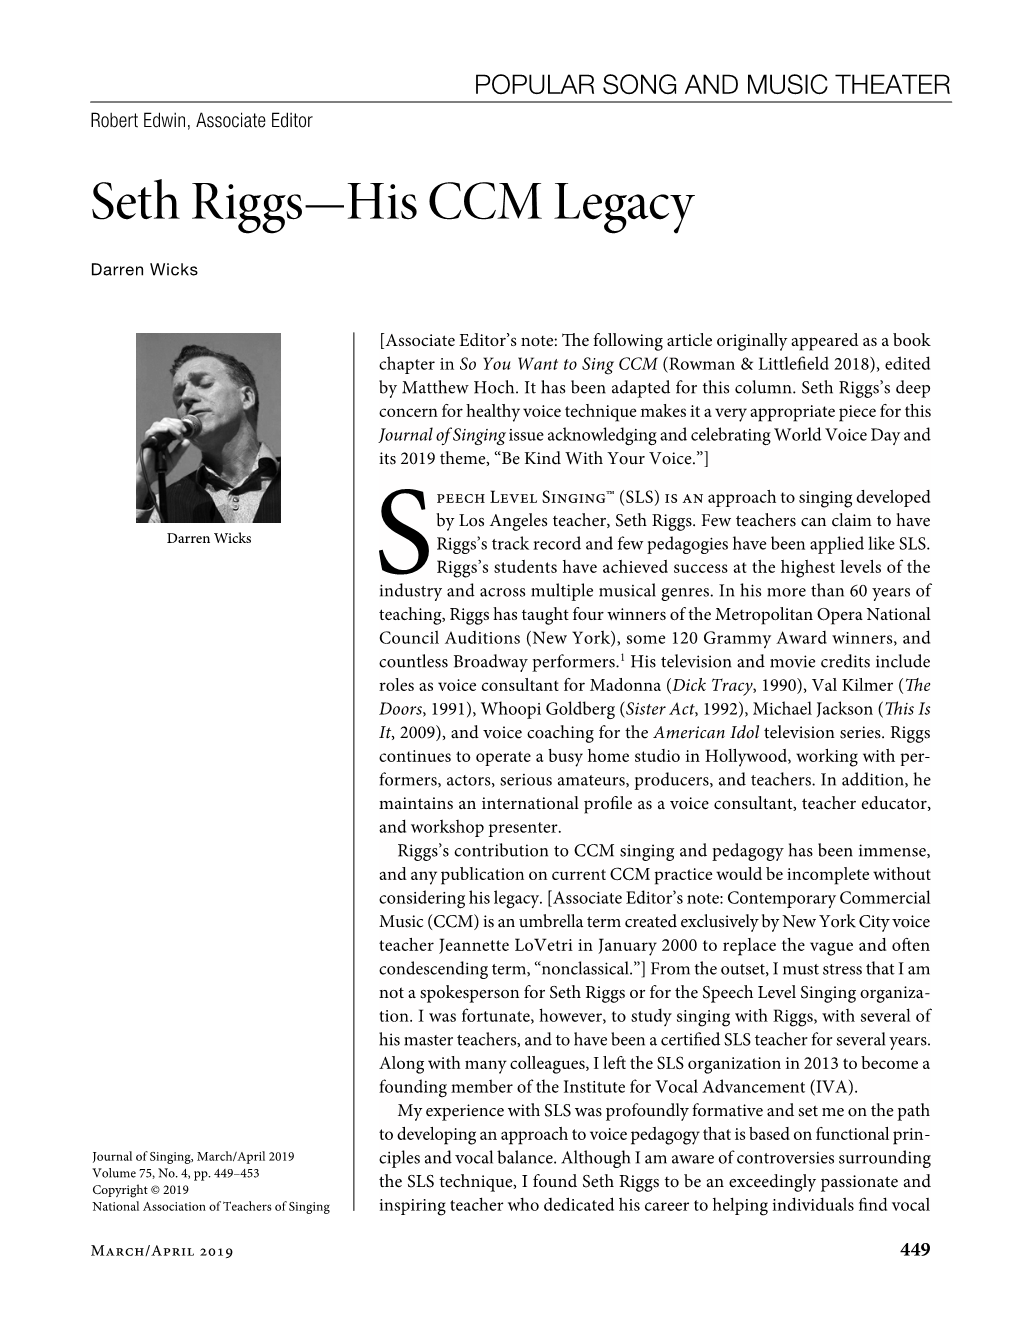 Seth Riggs—His CCM Legacy